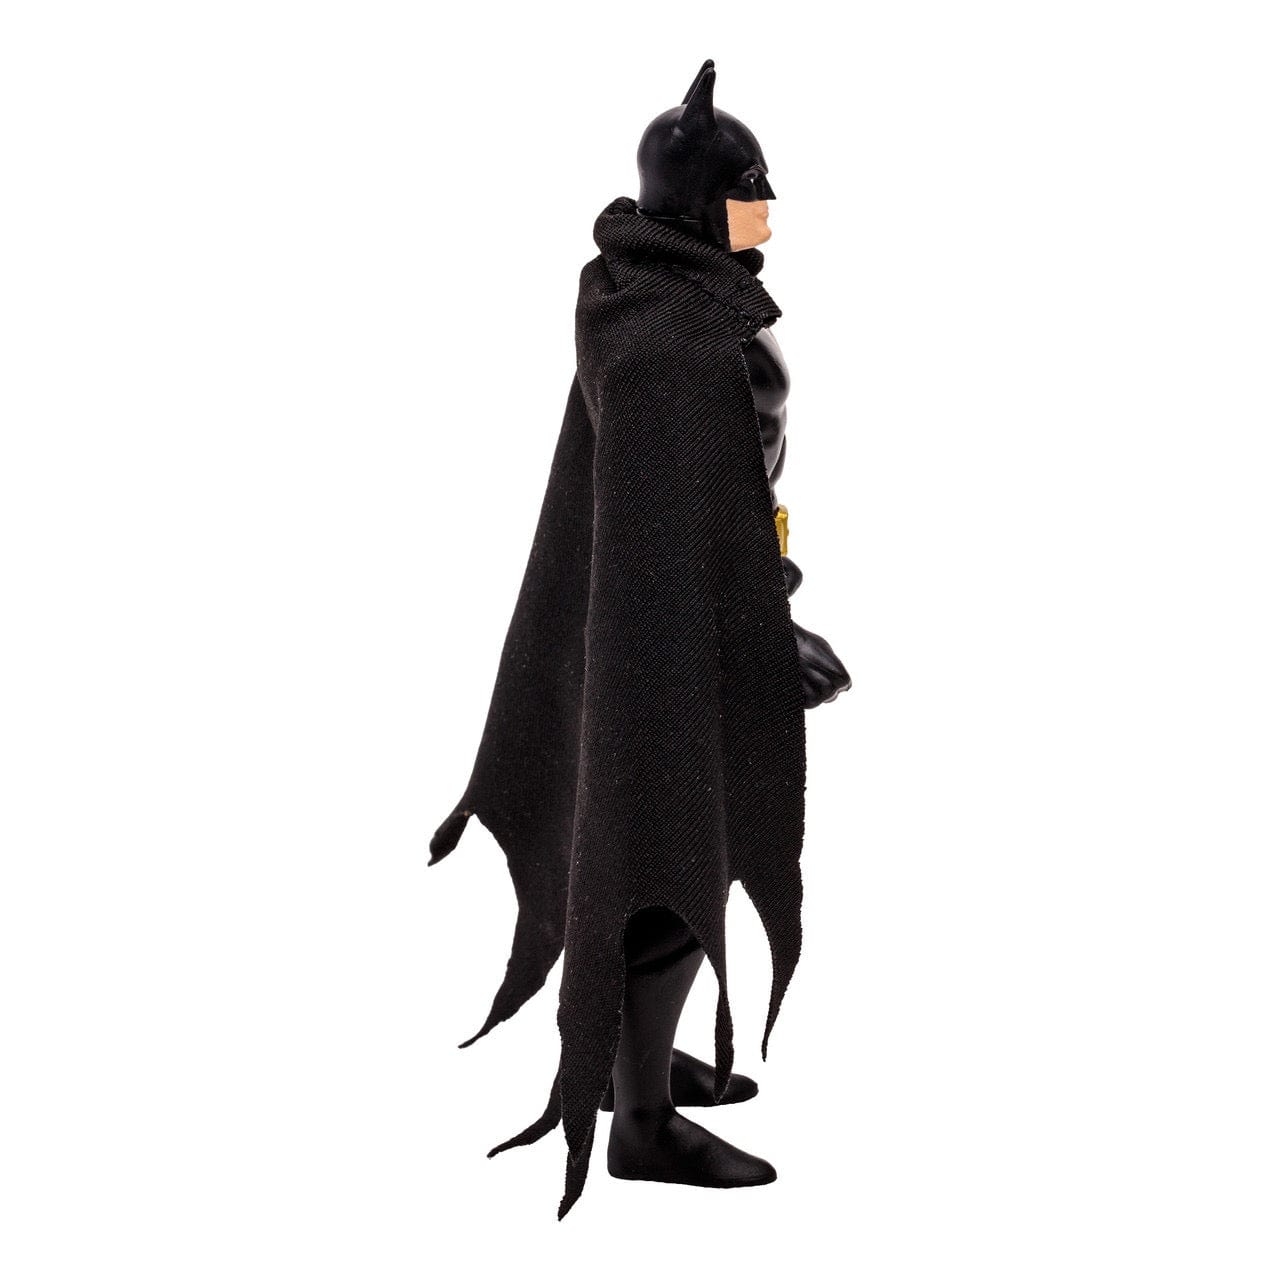 McFarlane Toys DC Super Powers Batman (Black Suit) Action Figure